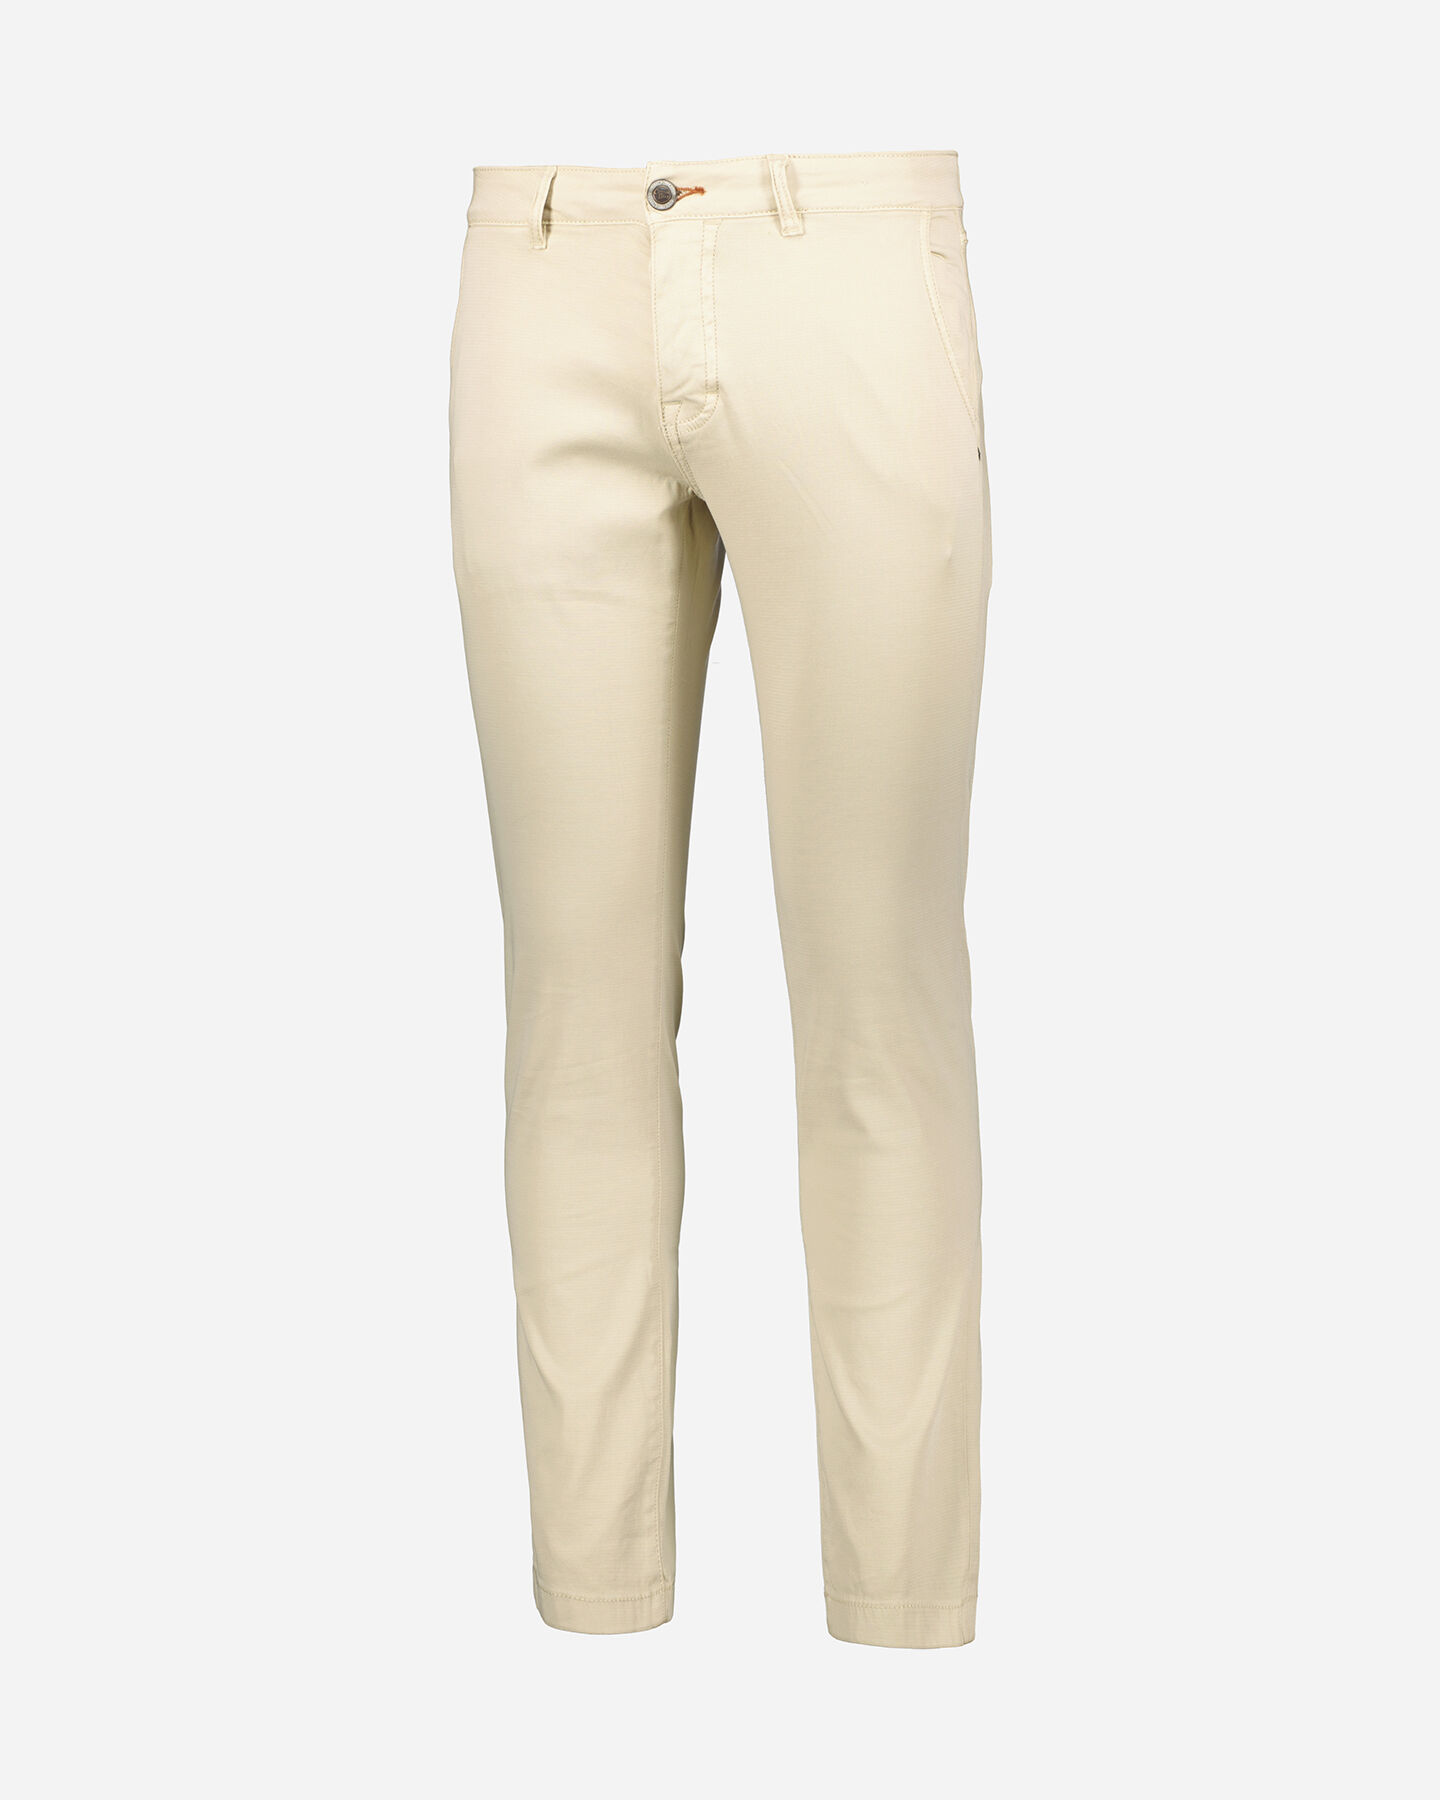  Pantalone COTTON BELT CHINO M S4115861|90|30 scatto 0